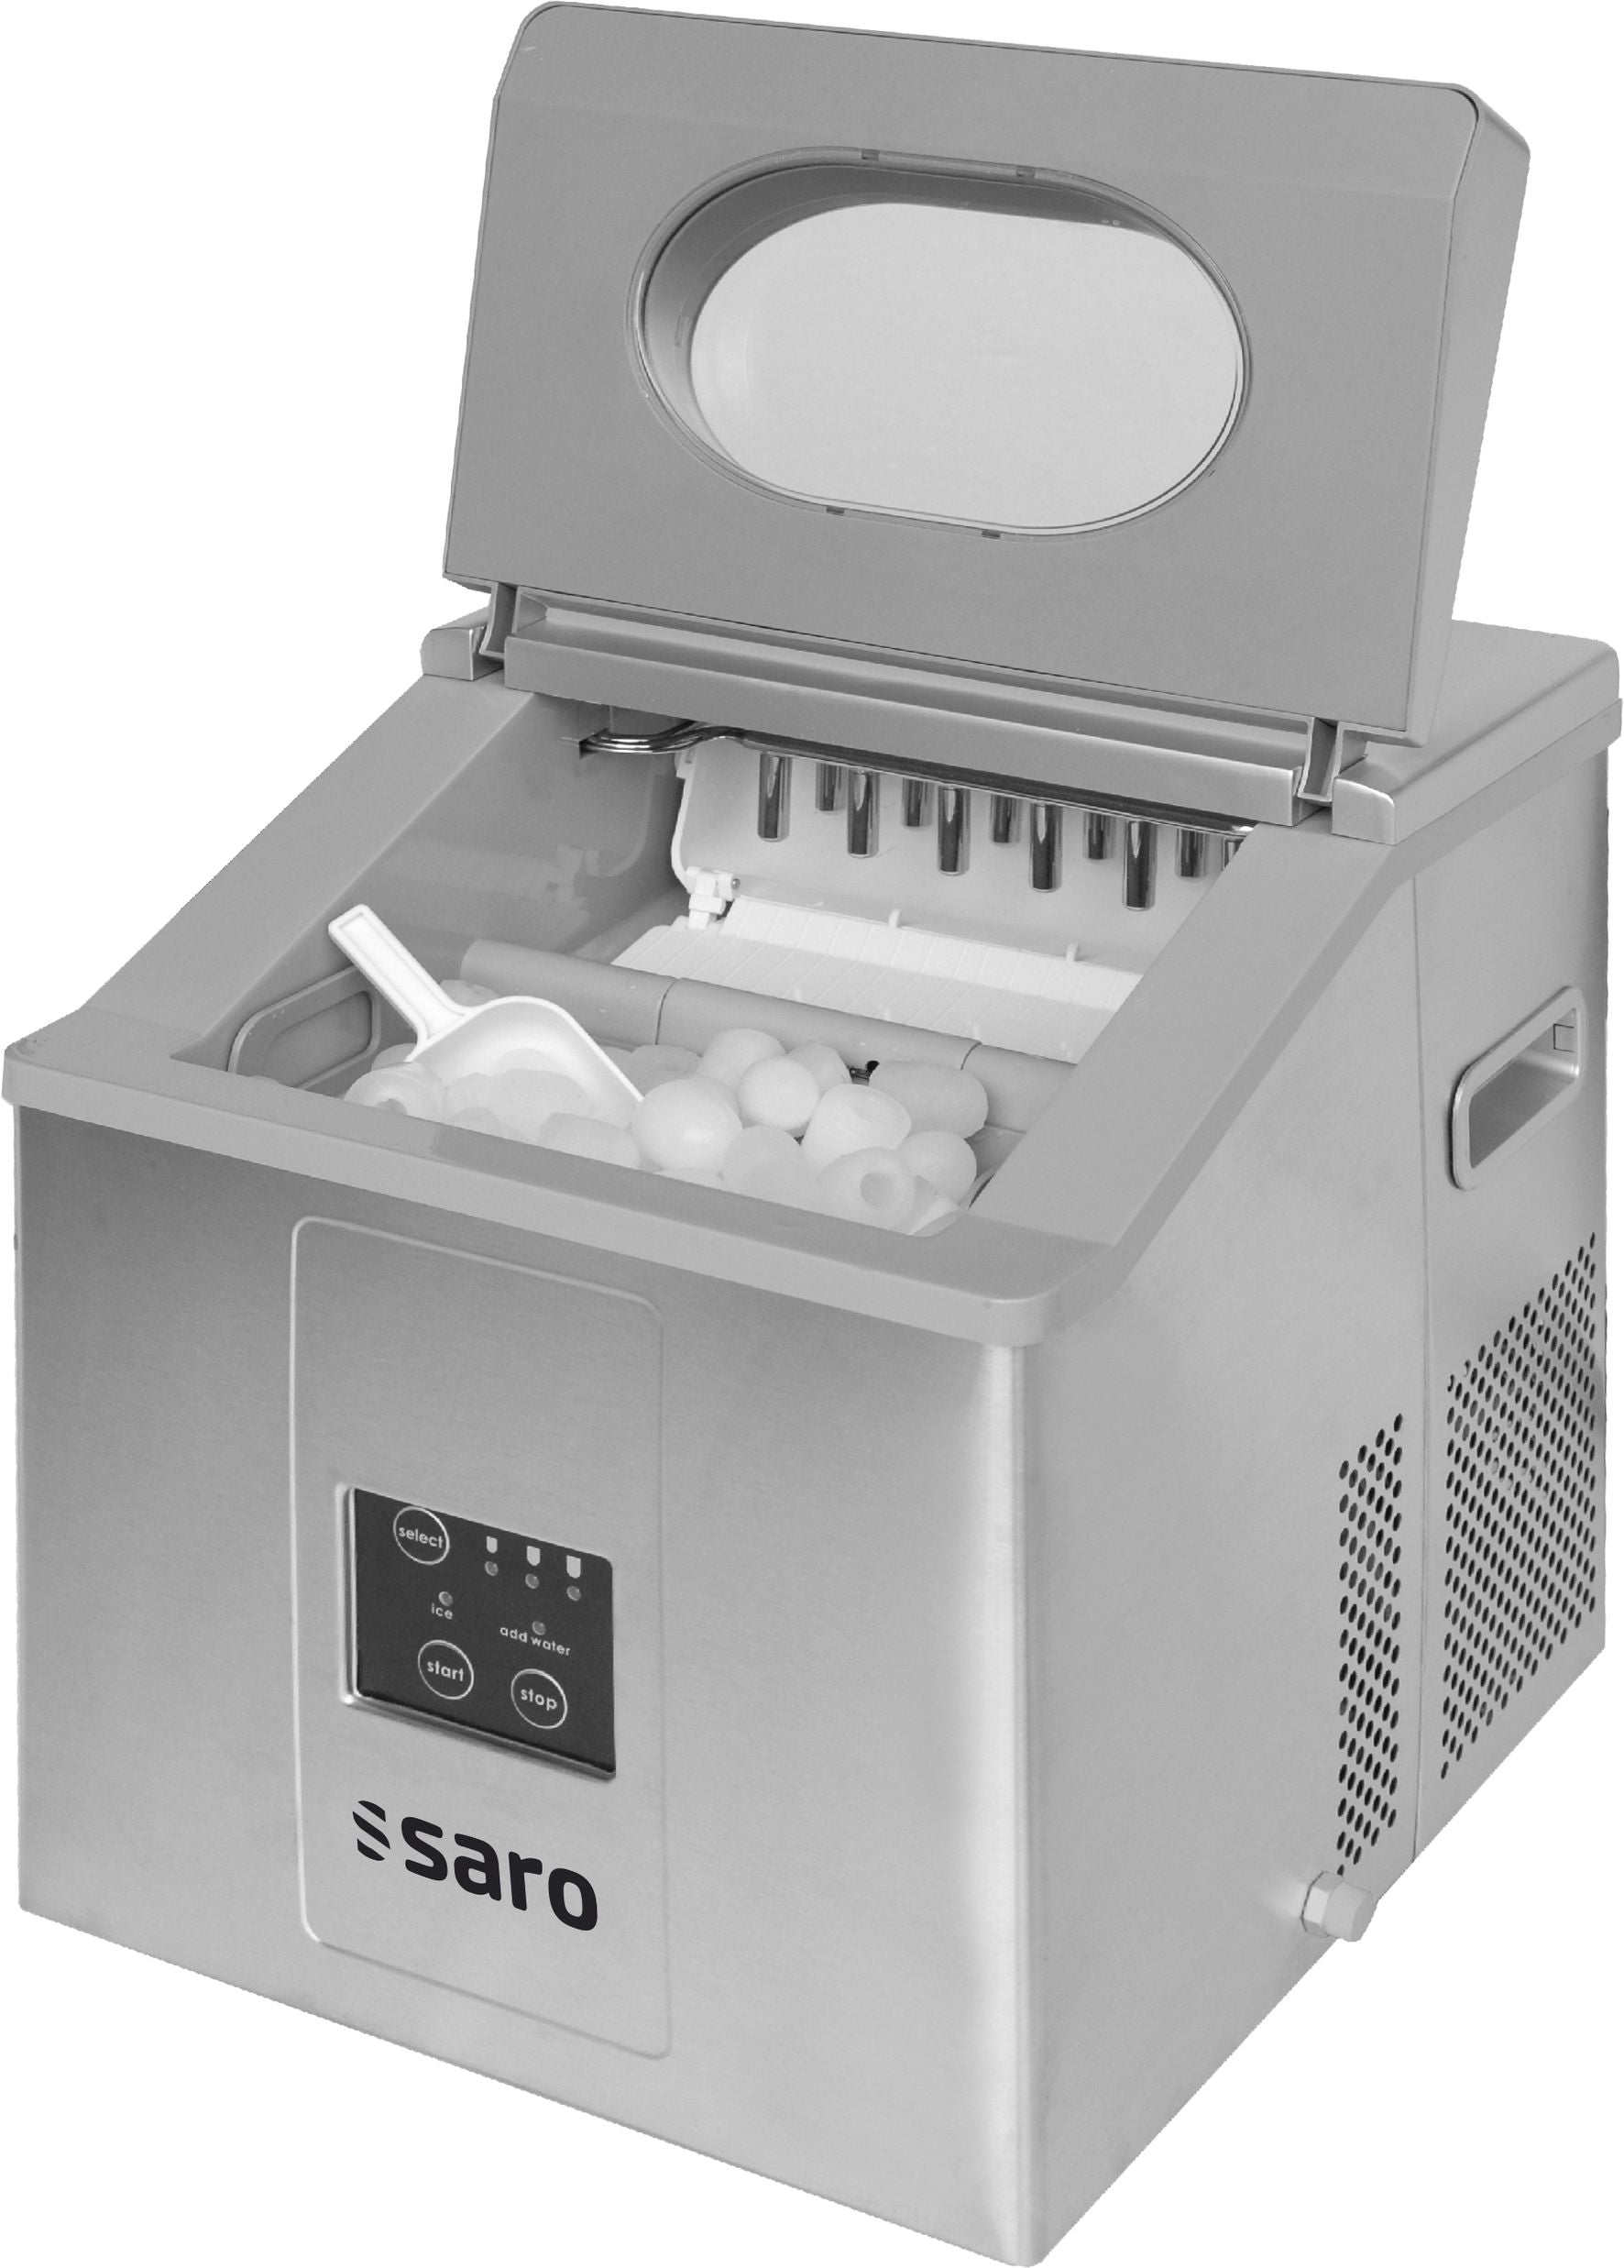 Se SARO isterningmaskine model EB 15 - 15 kg hos Maxigastro.com